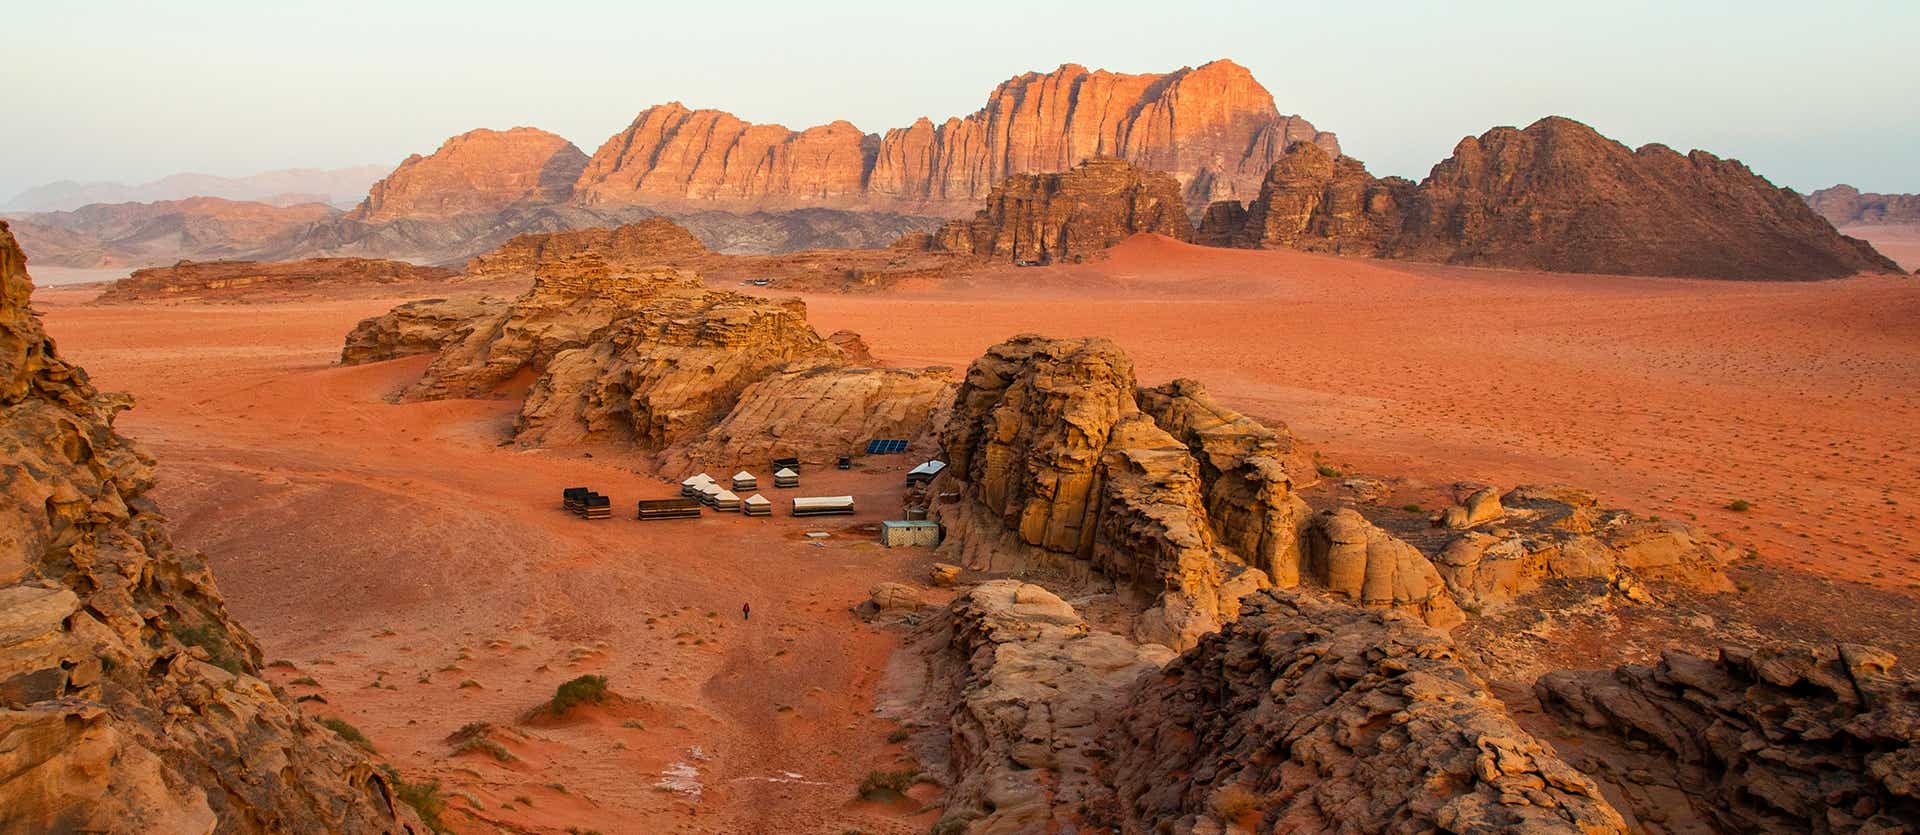 Wadi Rum Desert <span class="iconos separador"></span> Jordan